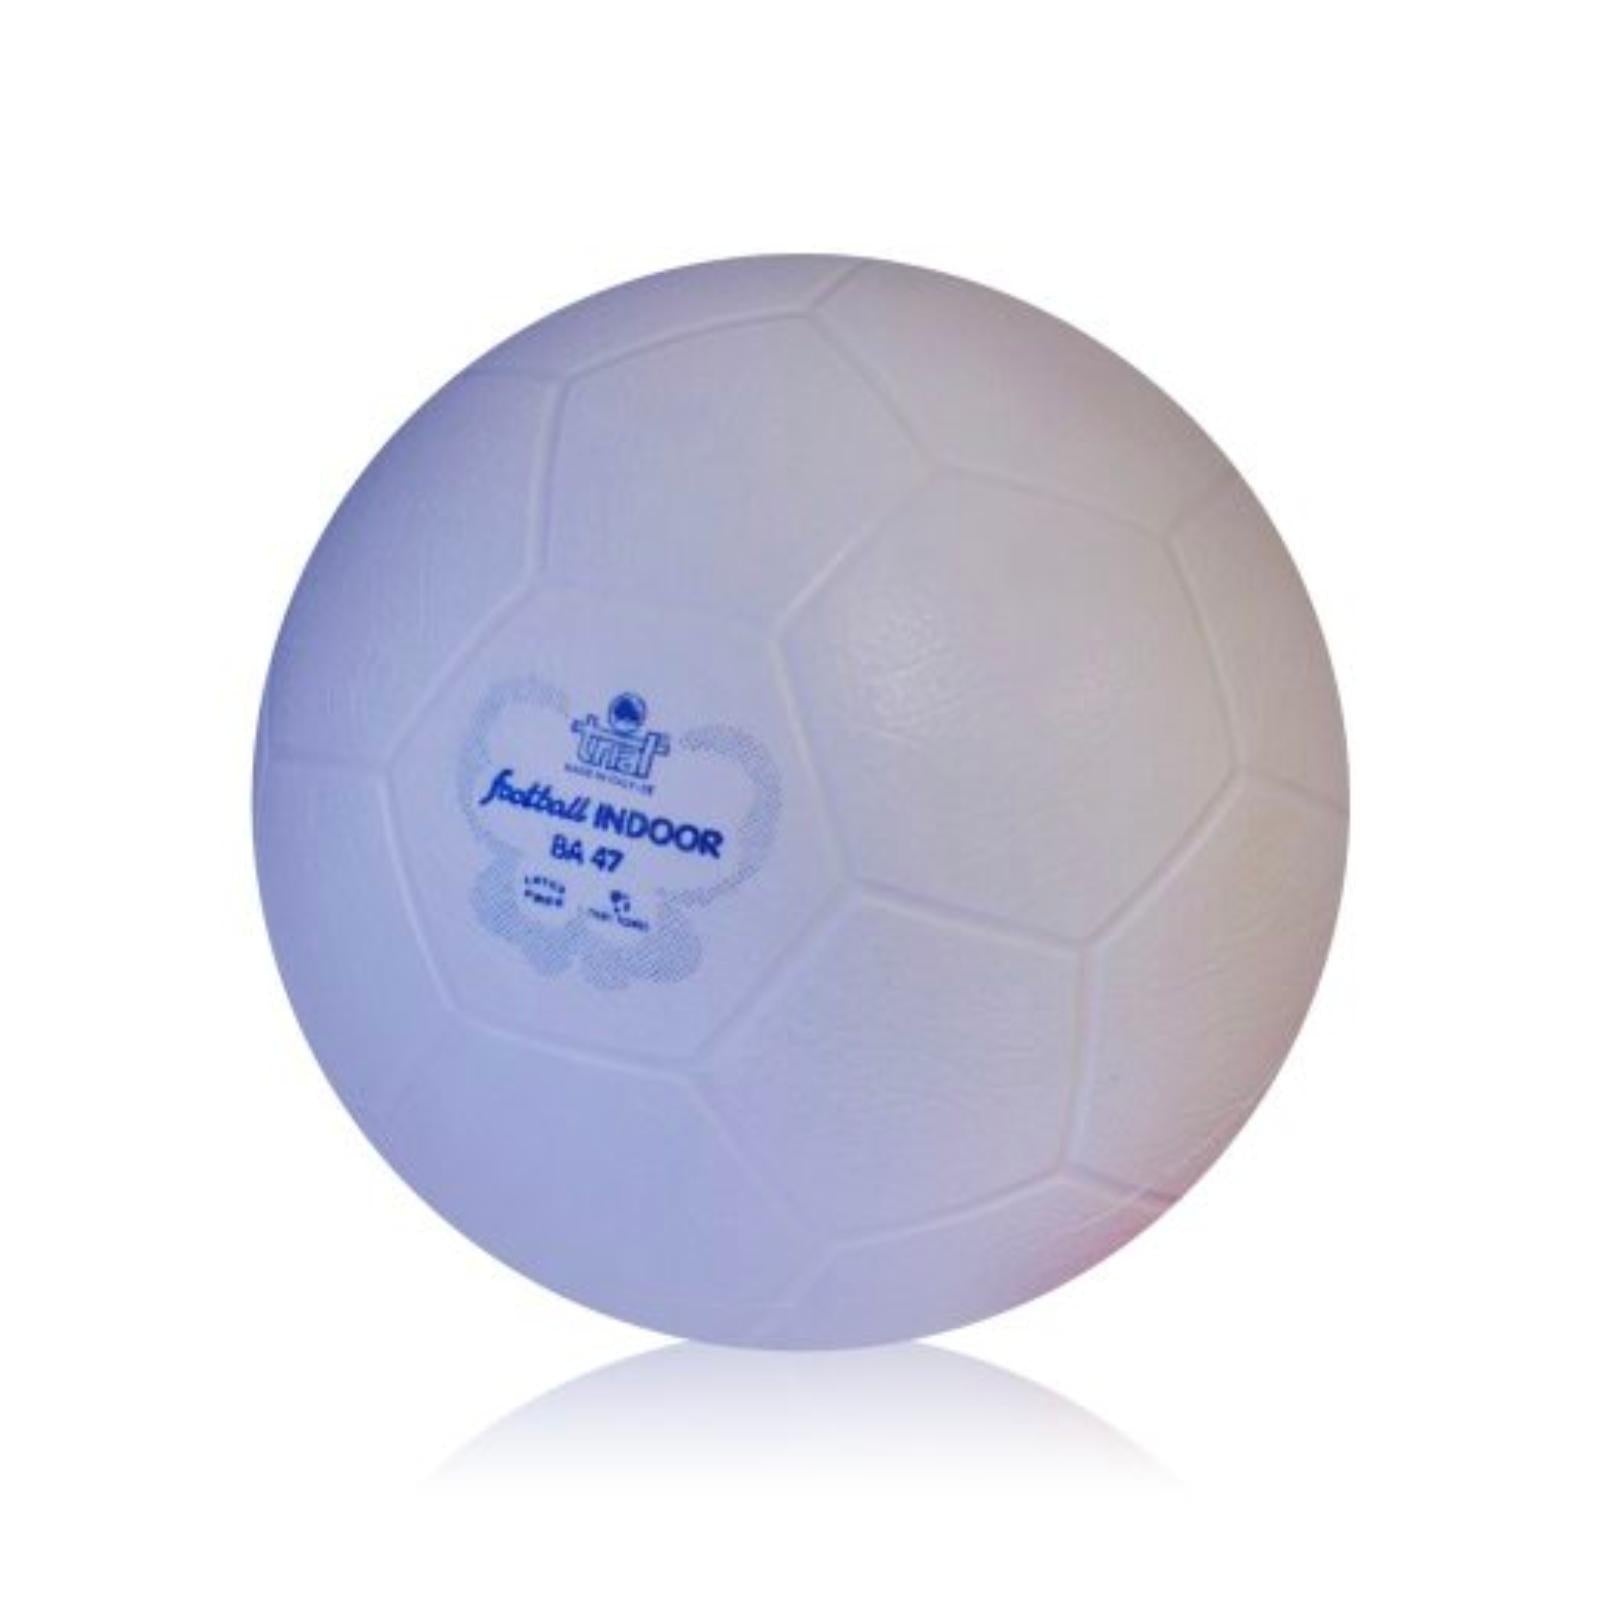 Pallone Calcio Indoor Super Soft - Ideale per Apprendere Tecnica Sportiva ed il Calcetto - 420 gr